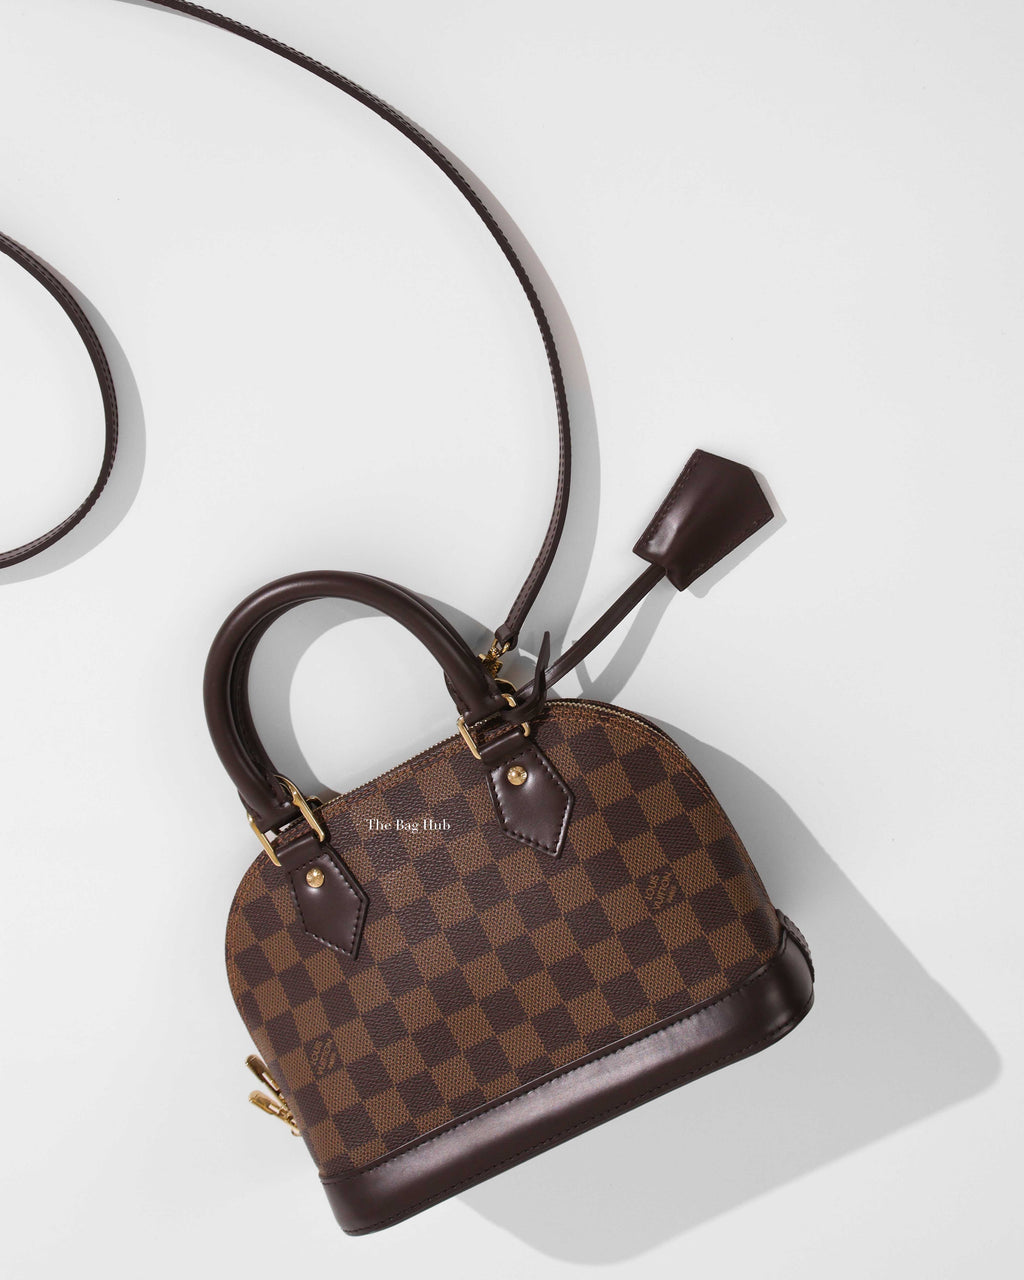 Túi xách nữ hàng hiệu Louis Vuitton - phiên bản Siêu cấp LKM457